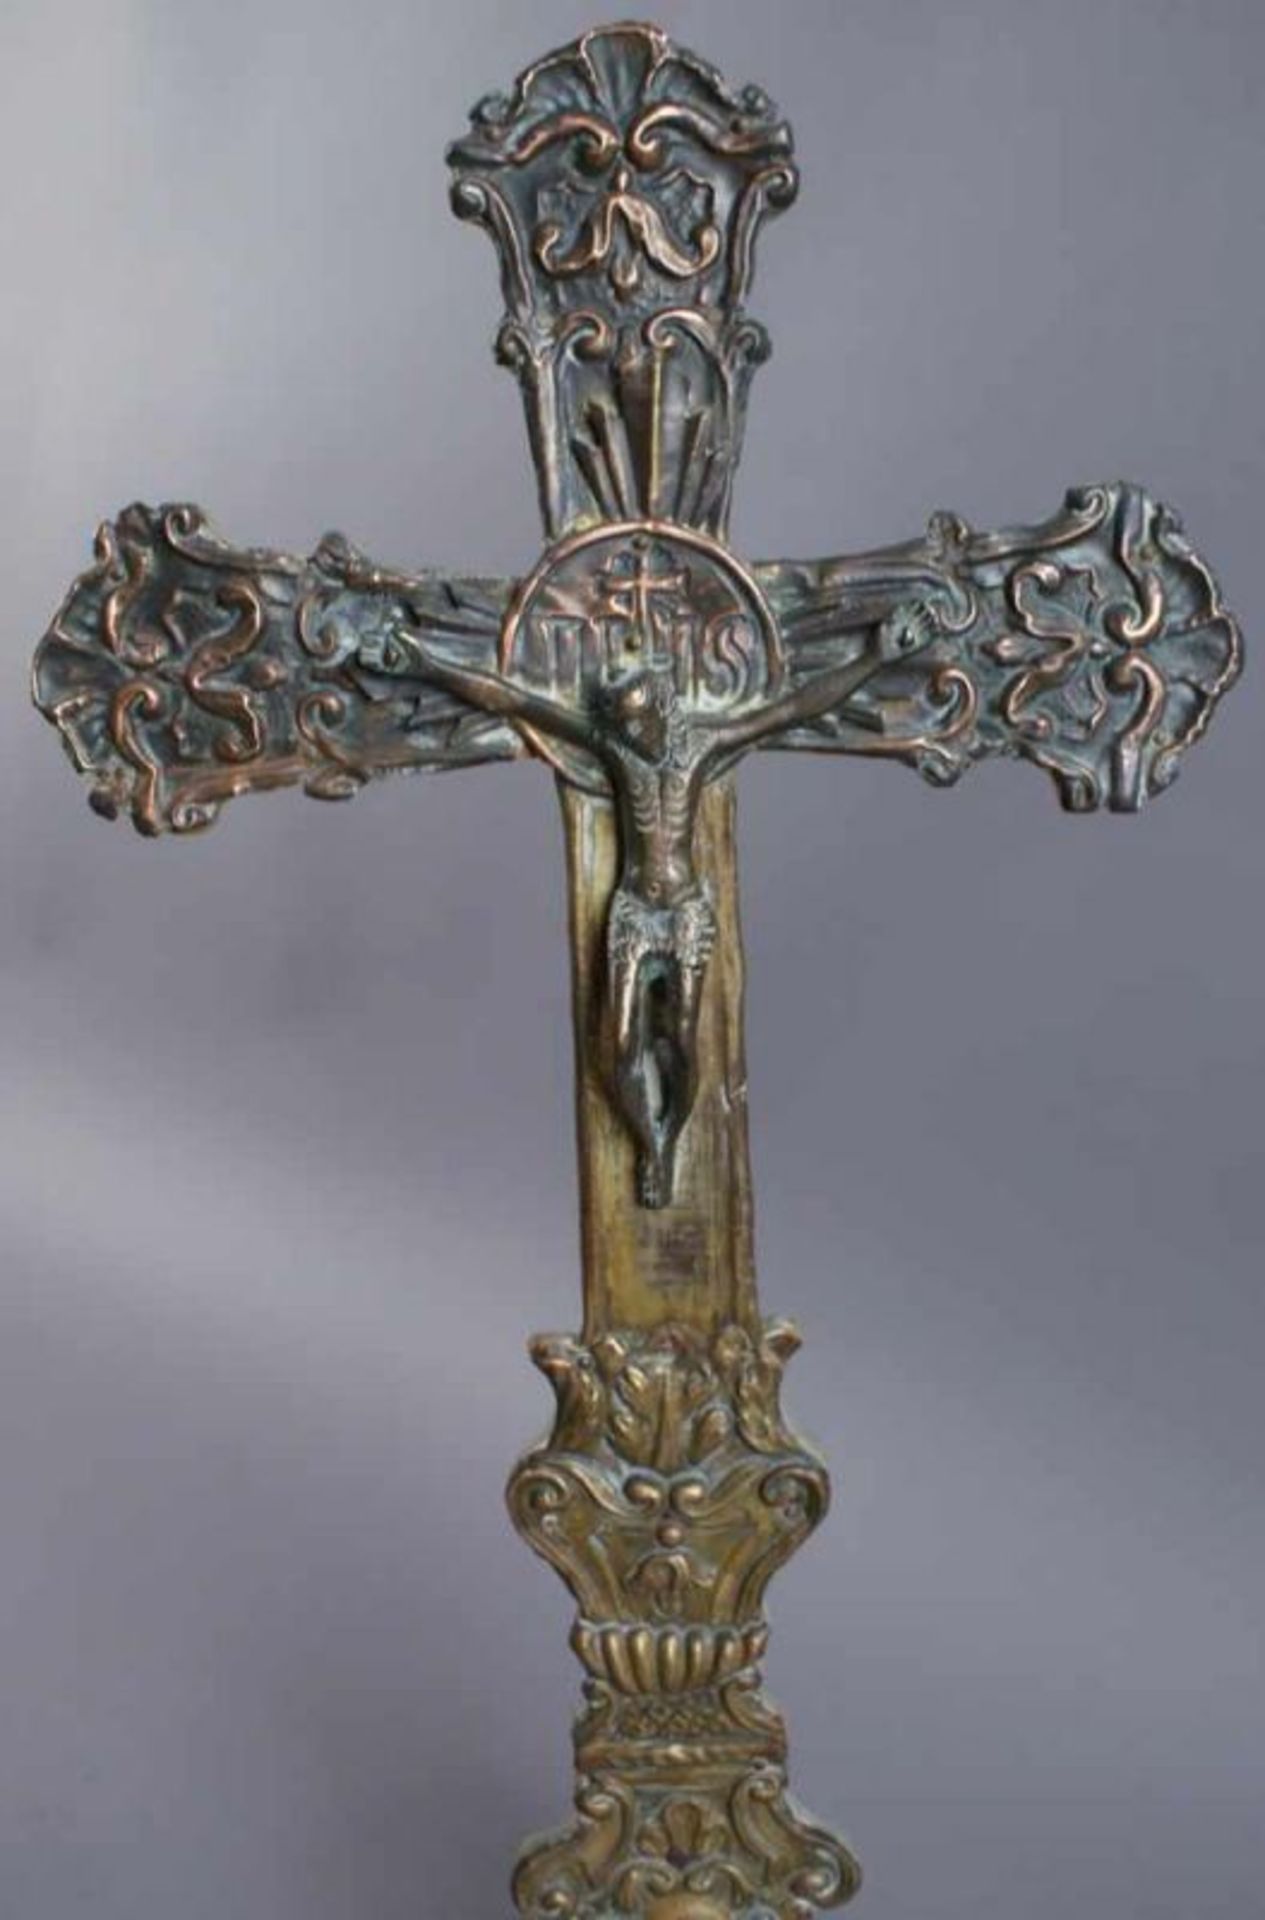 Grosses Standkreuz aus getriebenem Metall, auf Holzkorpus angebracht, H 49 cm 20.17 % buyer's - Bild 2 aus 5